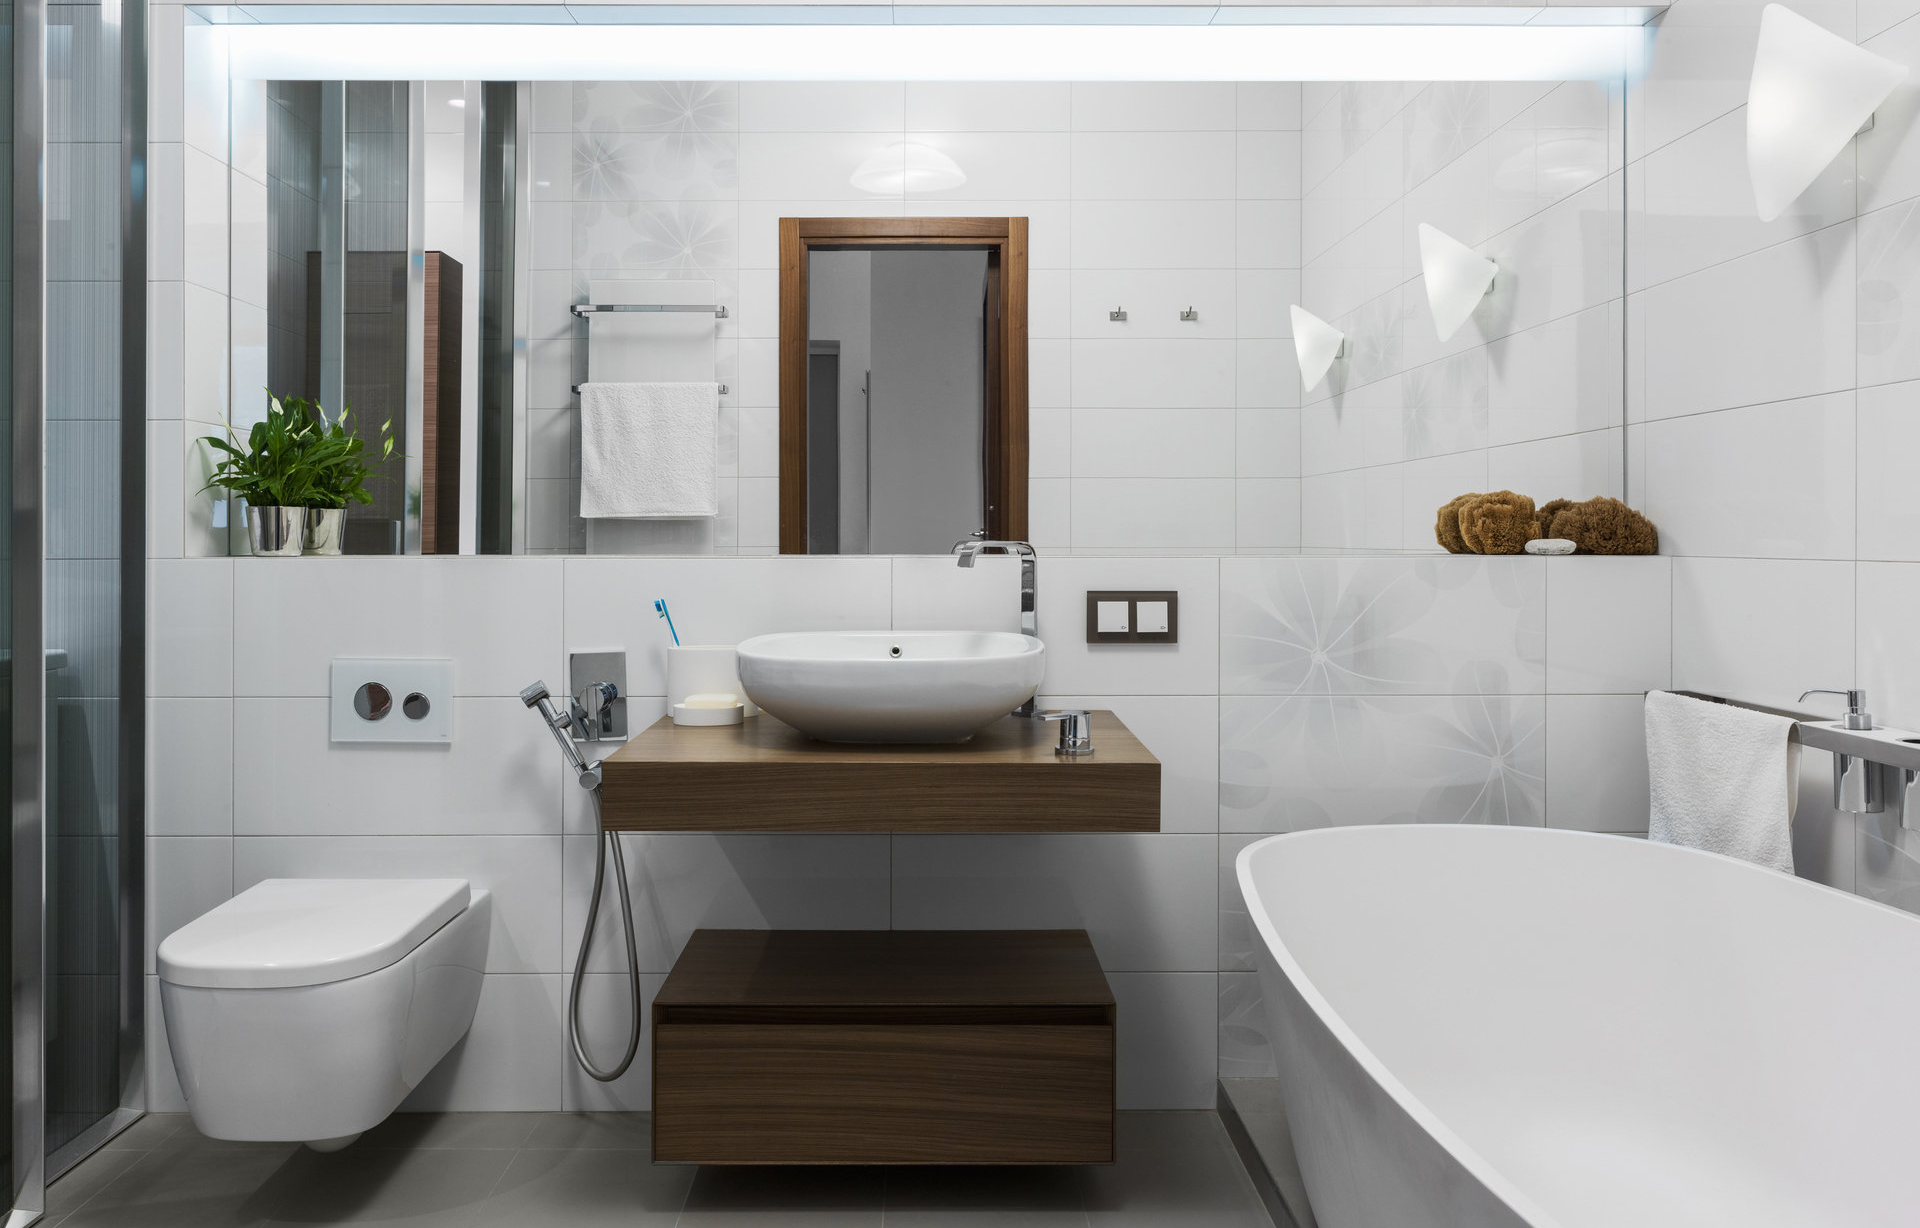 Интерьер ванной комнаты в современном стиле эконом класса в квартире (69 фото)